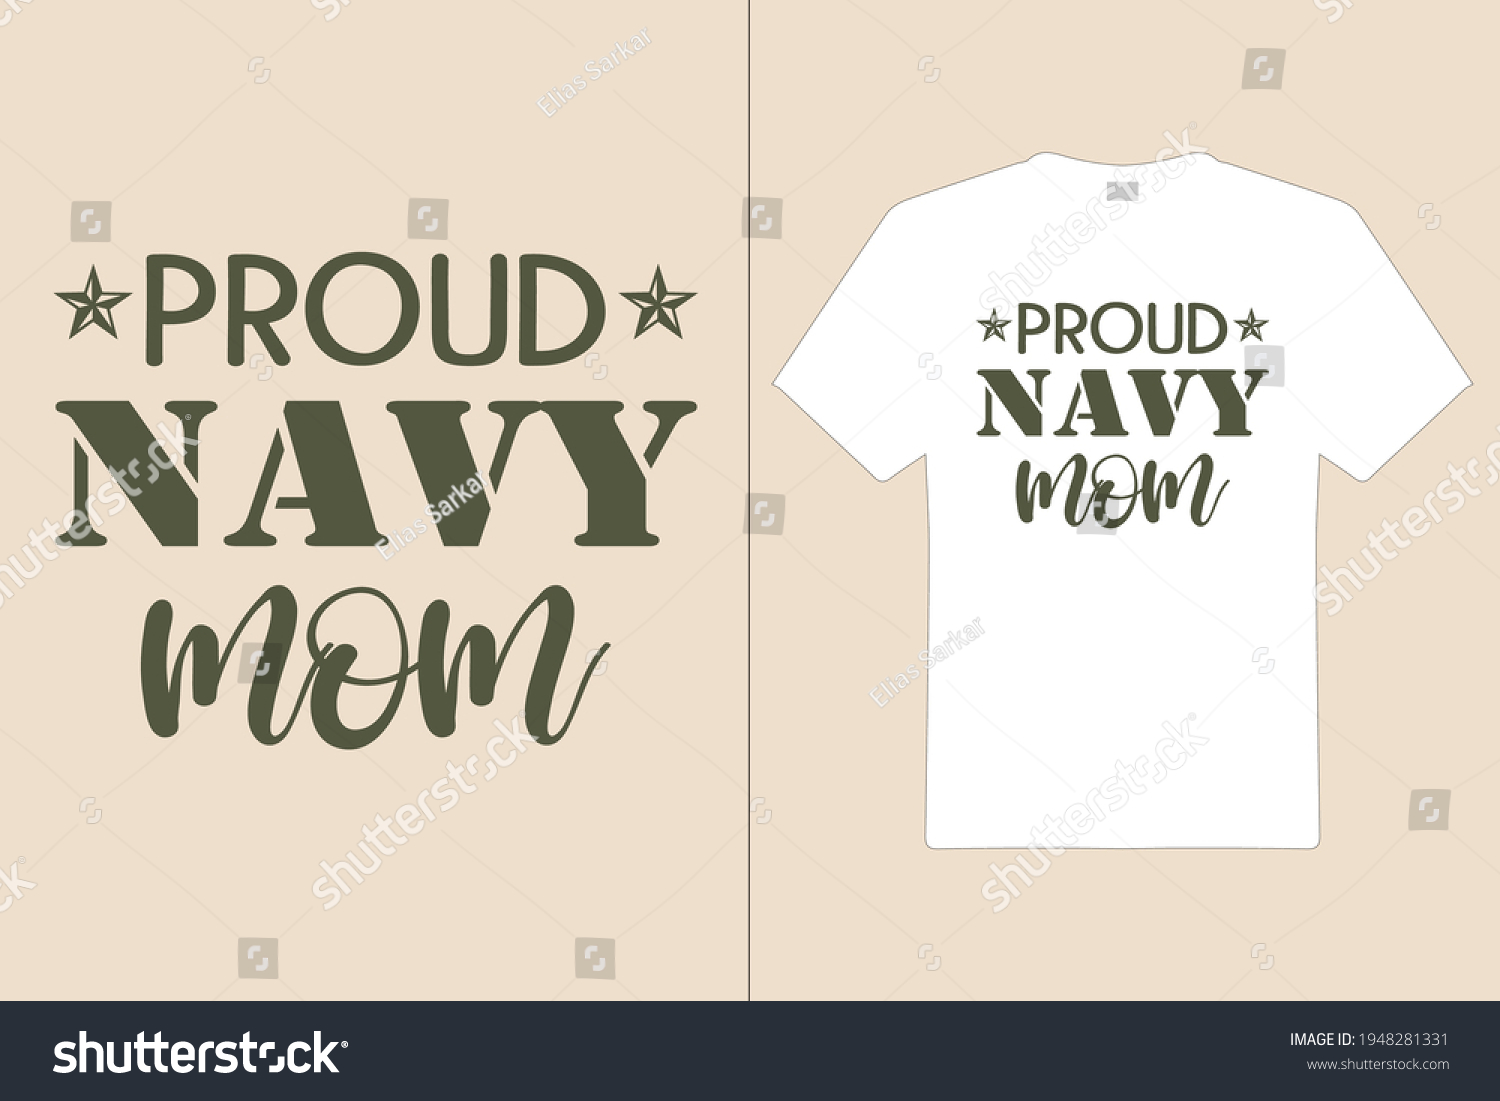 Proud Navy Mom T Shirt Design เวกเตอร์สต็อก ปลอดค่าลิขสิทธิ์ 1948281331 Shutterstock 